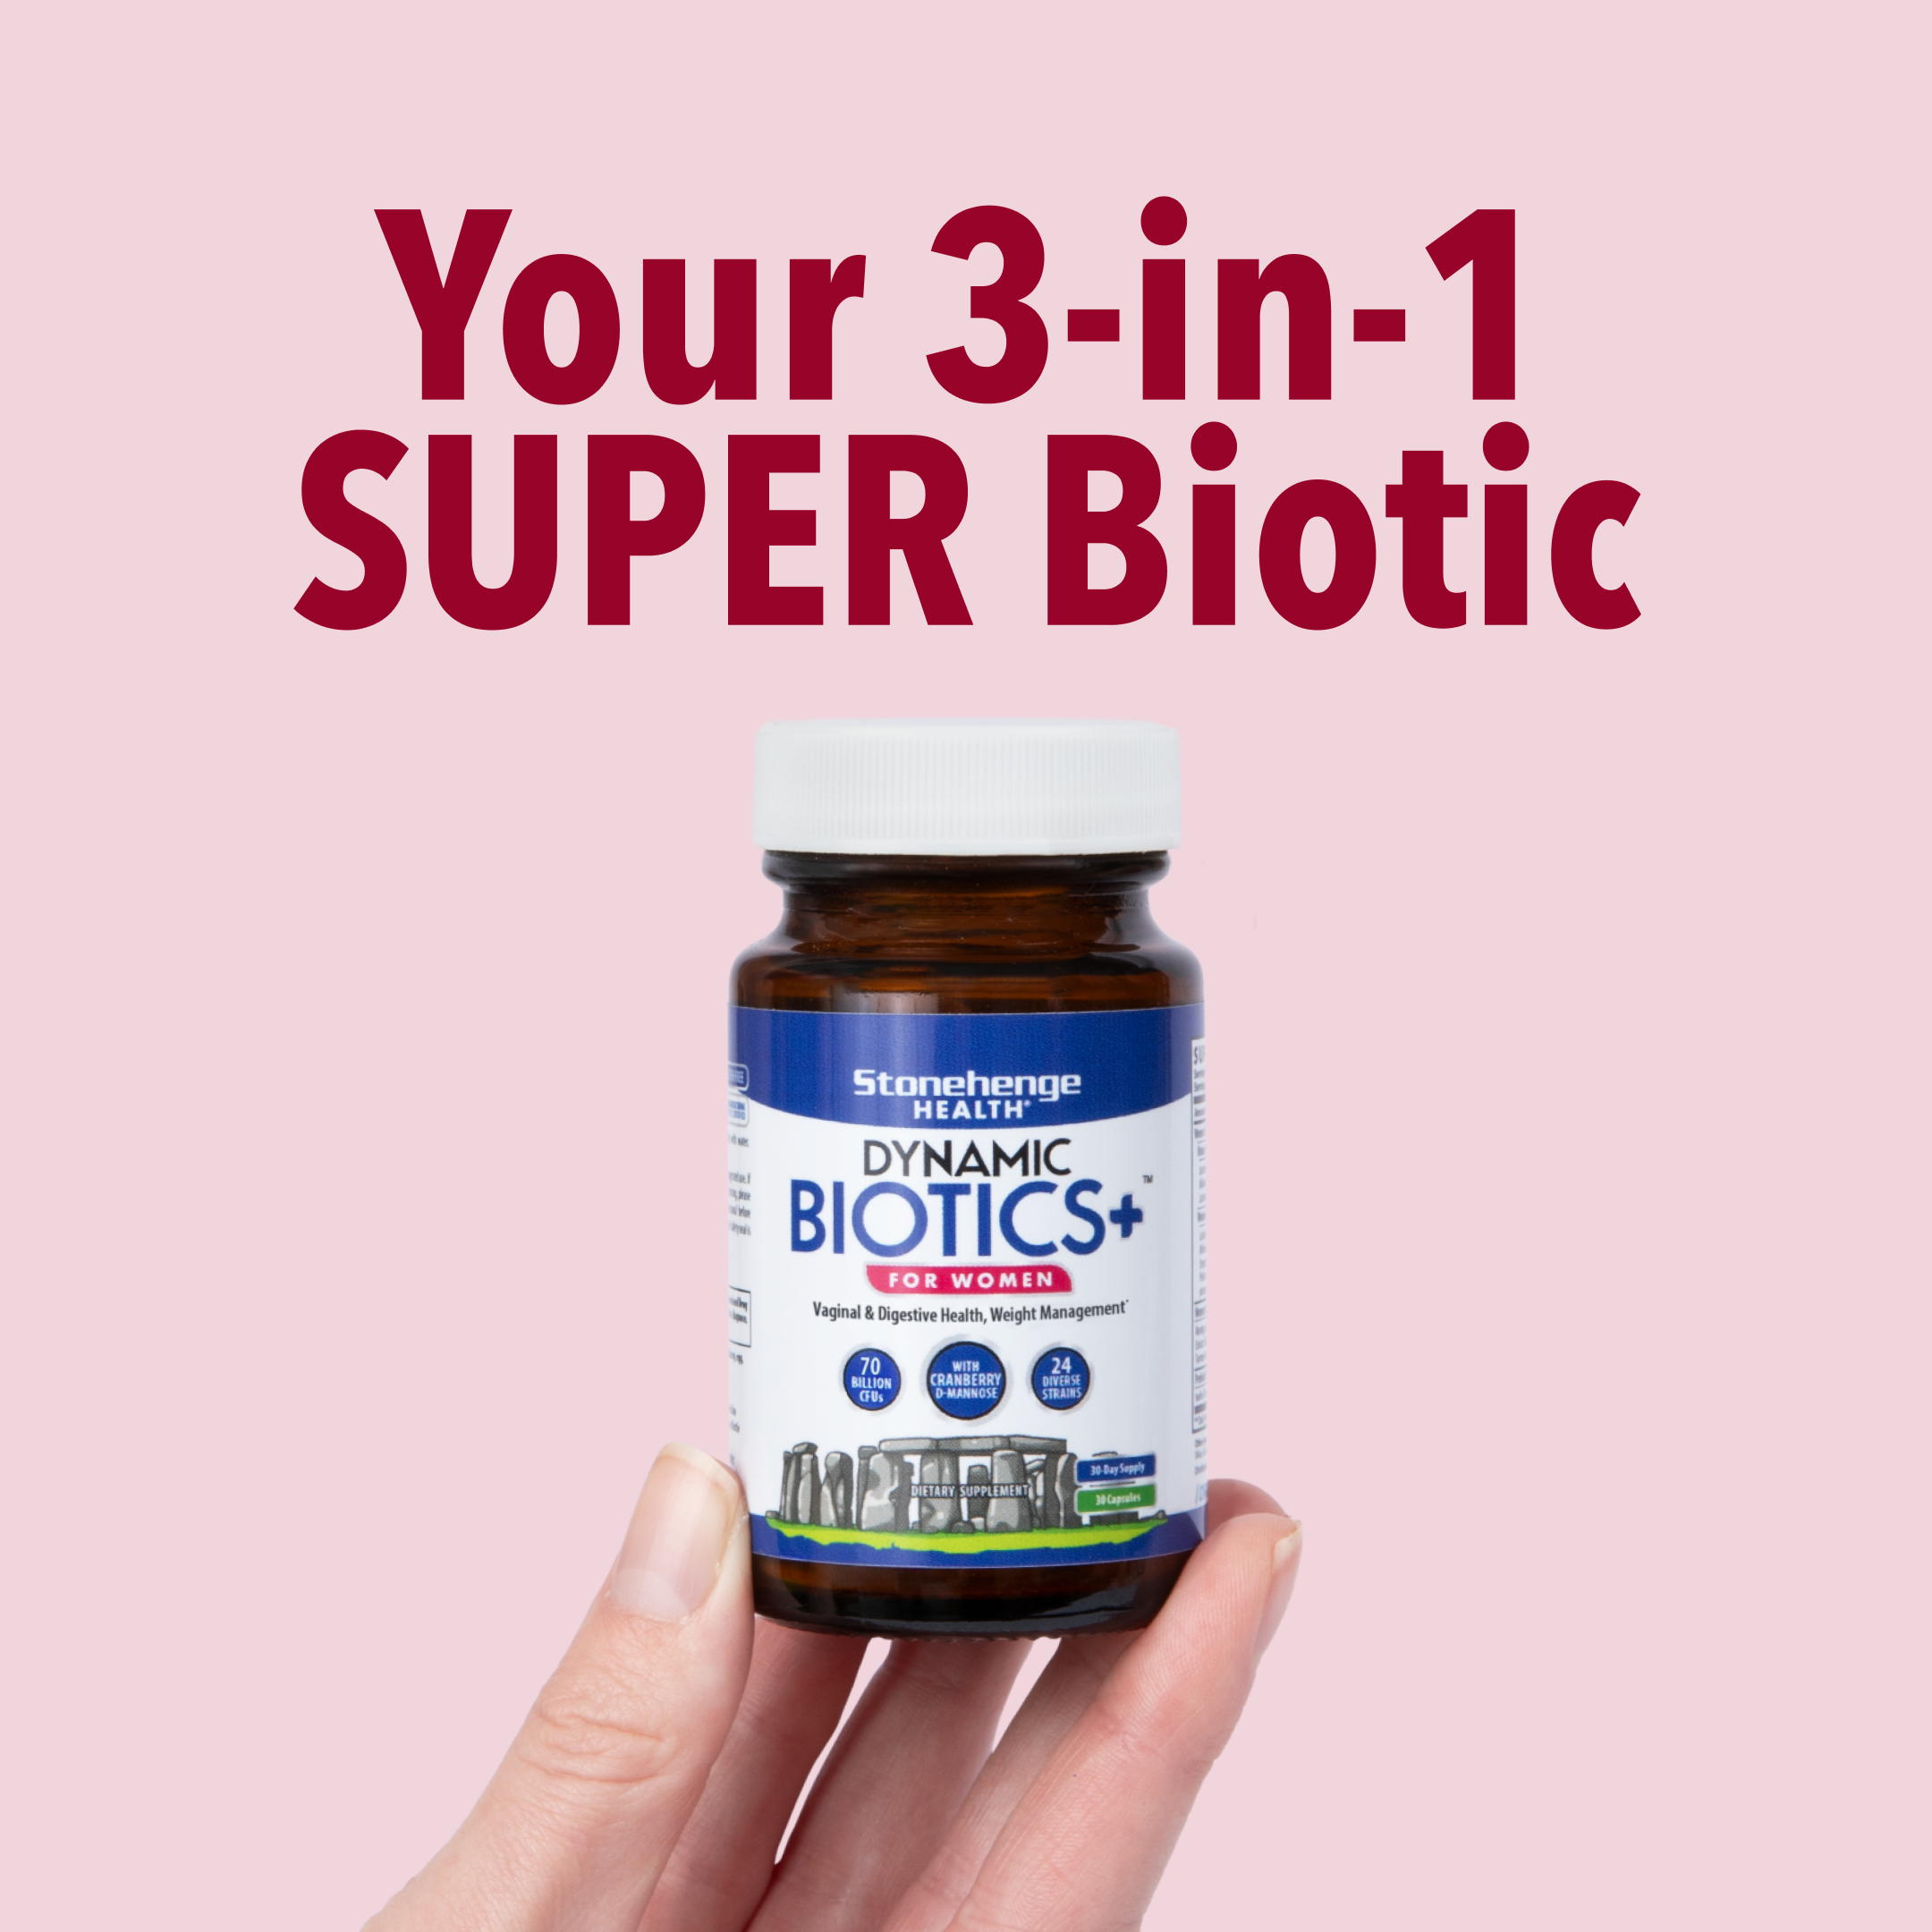 Your 3-in-1 super biotic